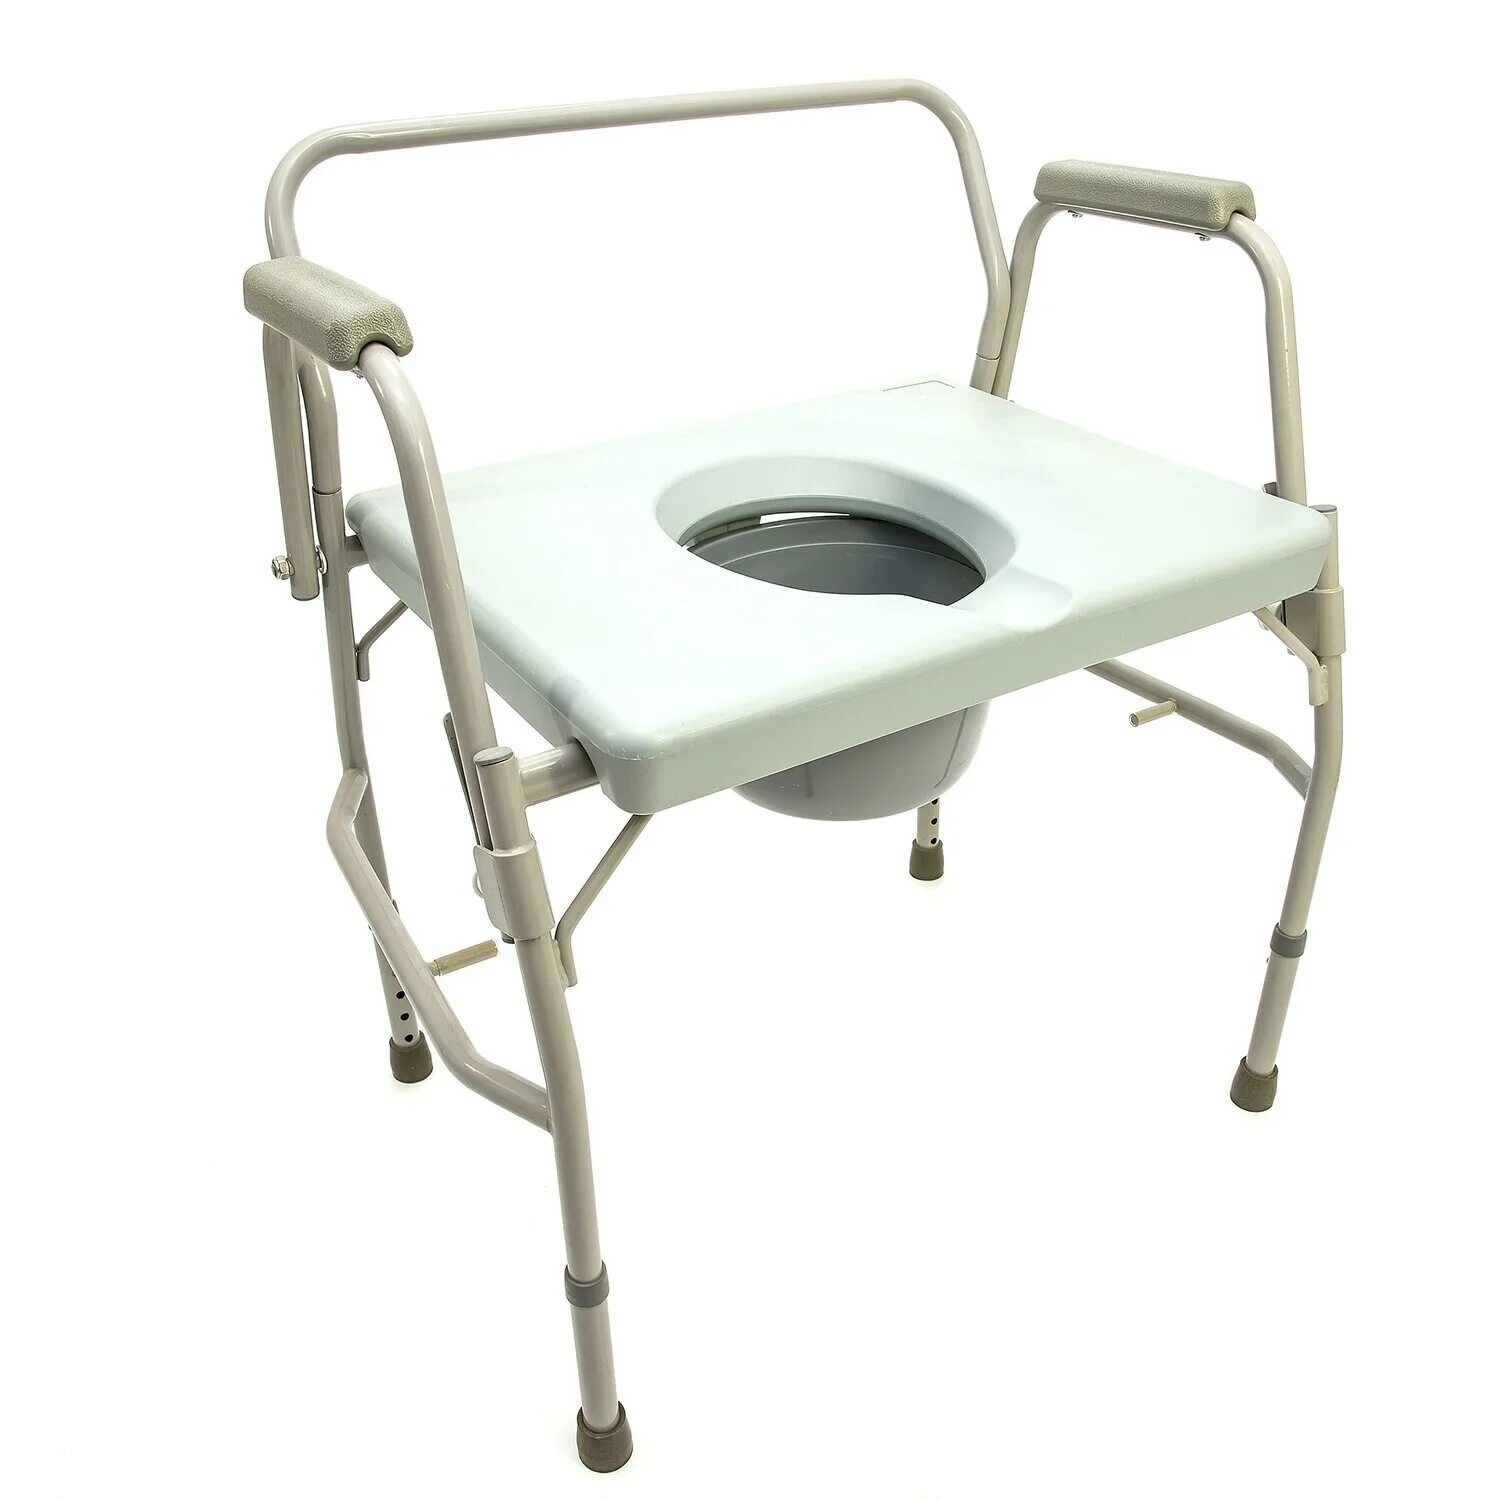 Купить туалетный стул. Кресло-туалет HMP-7012. Кресло-туалет мега-Оптим HMP-7012. Кресло стул с санитарным оснащением НМР-7012. Кресло-туалет trives ca668.